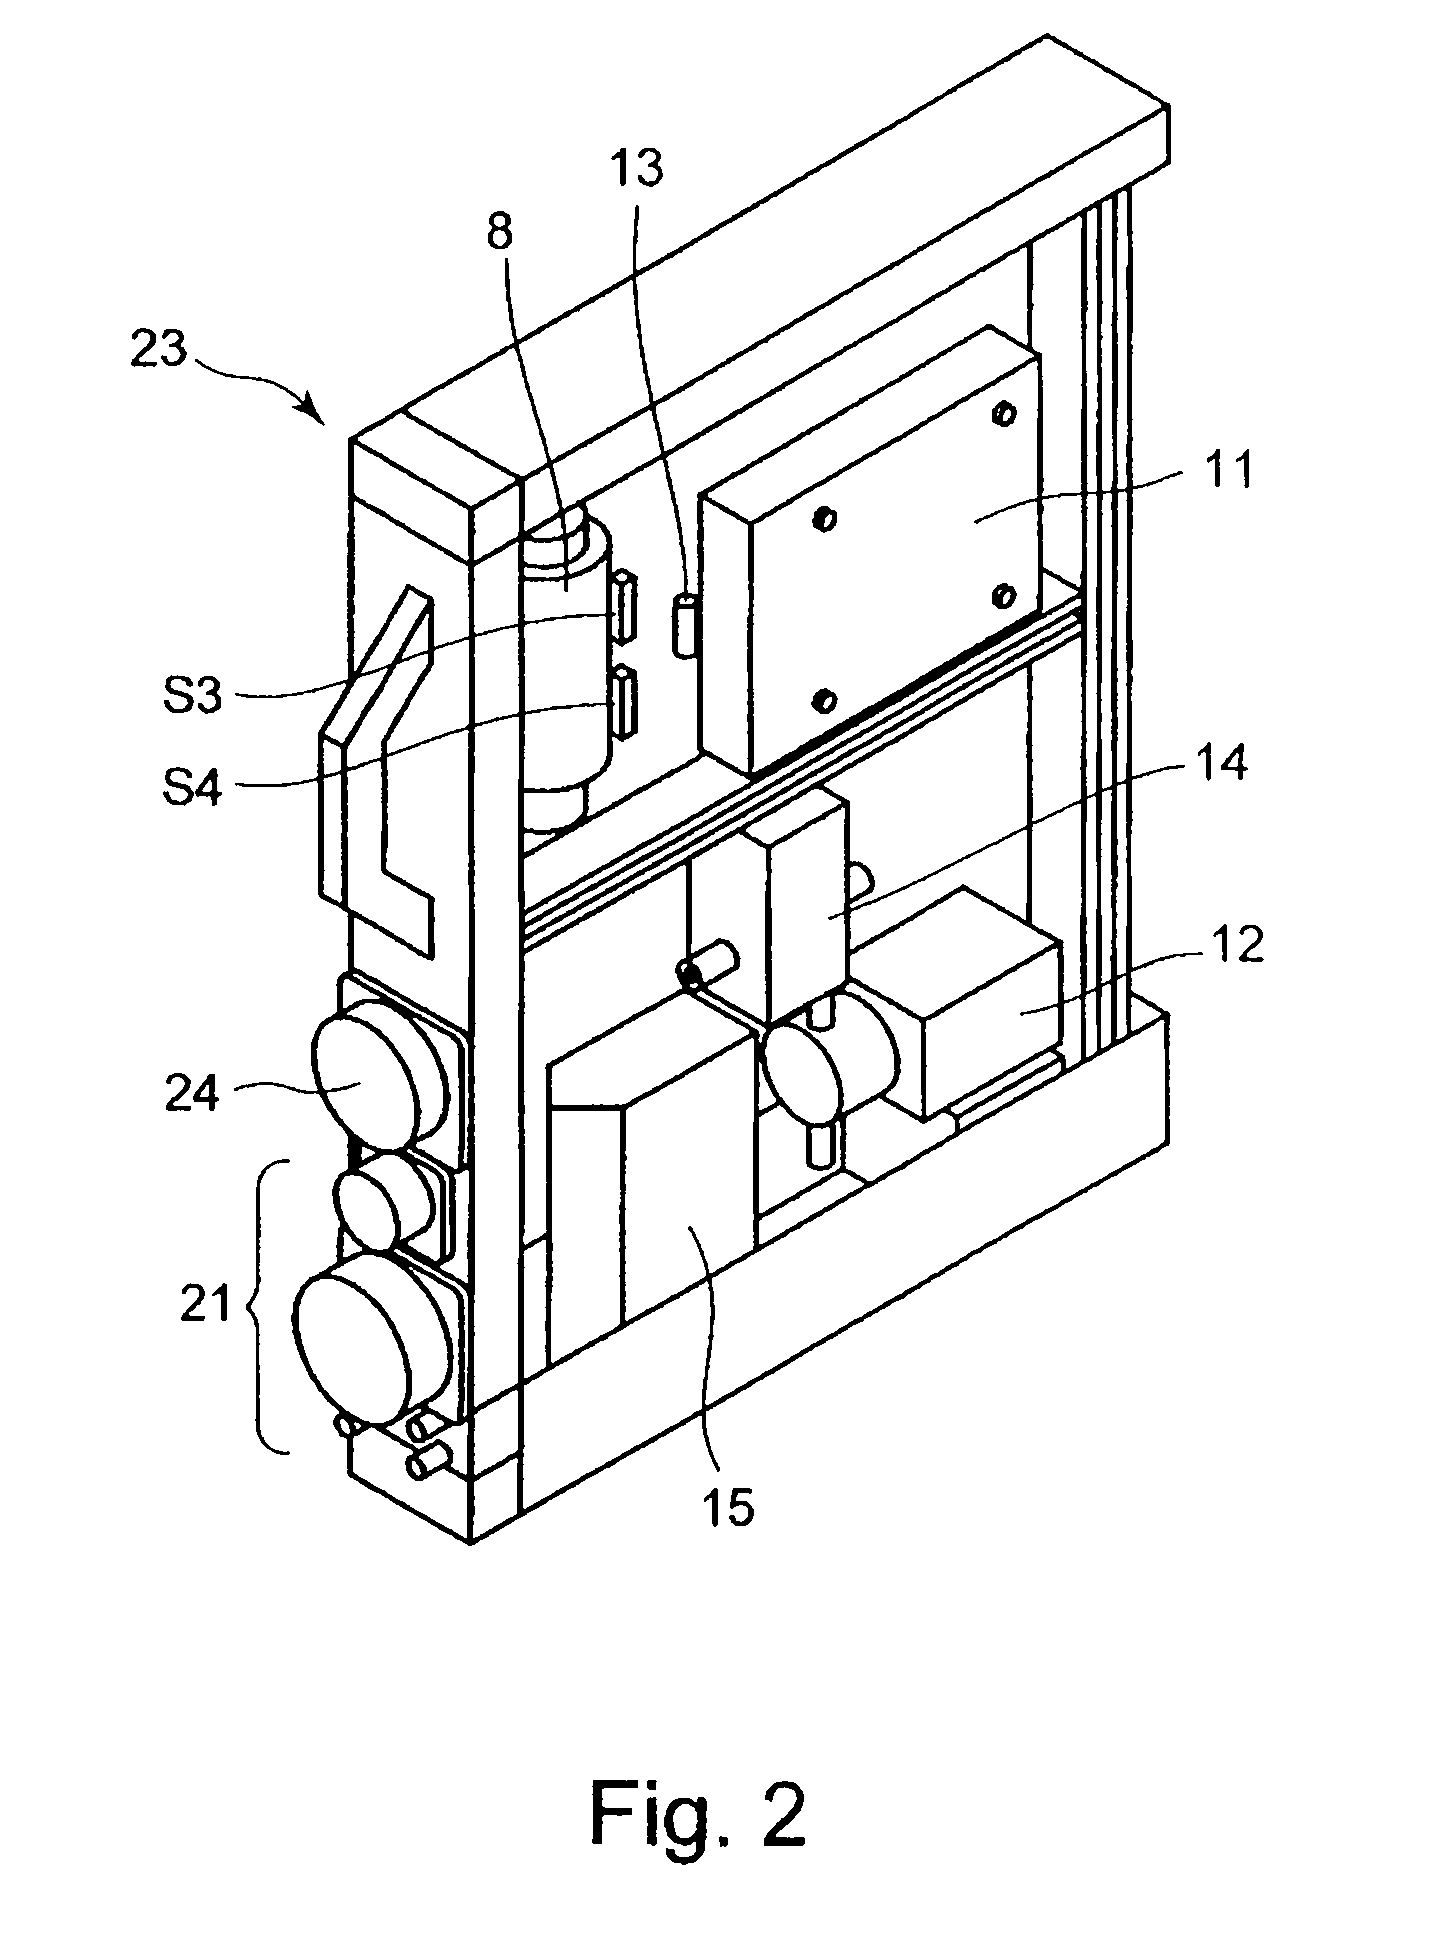 Liquid circulation unit, liquid circulation apparatus and method of manufacturing coated body